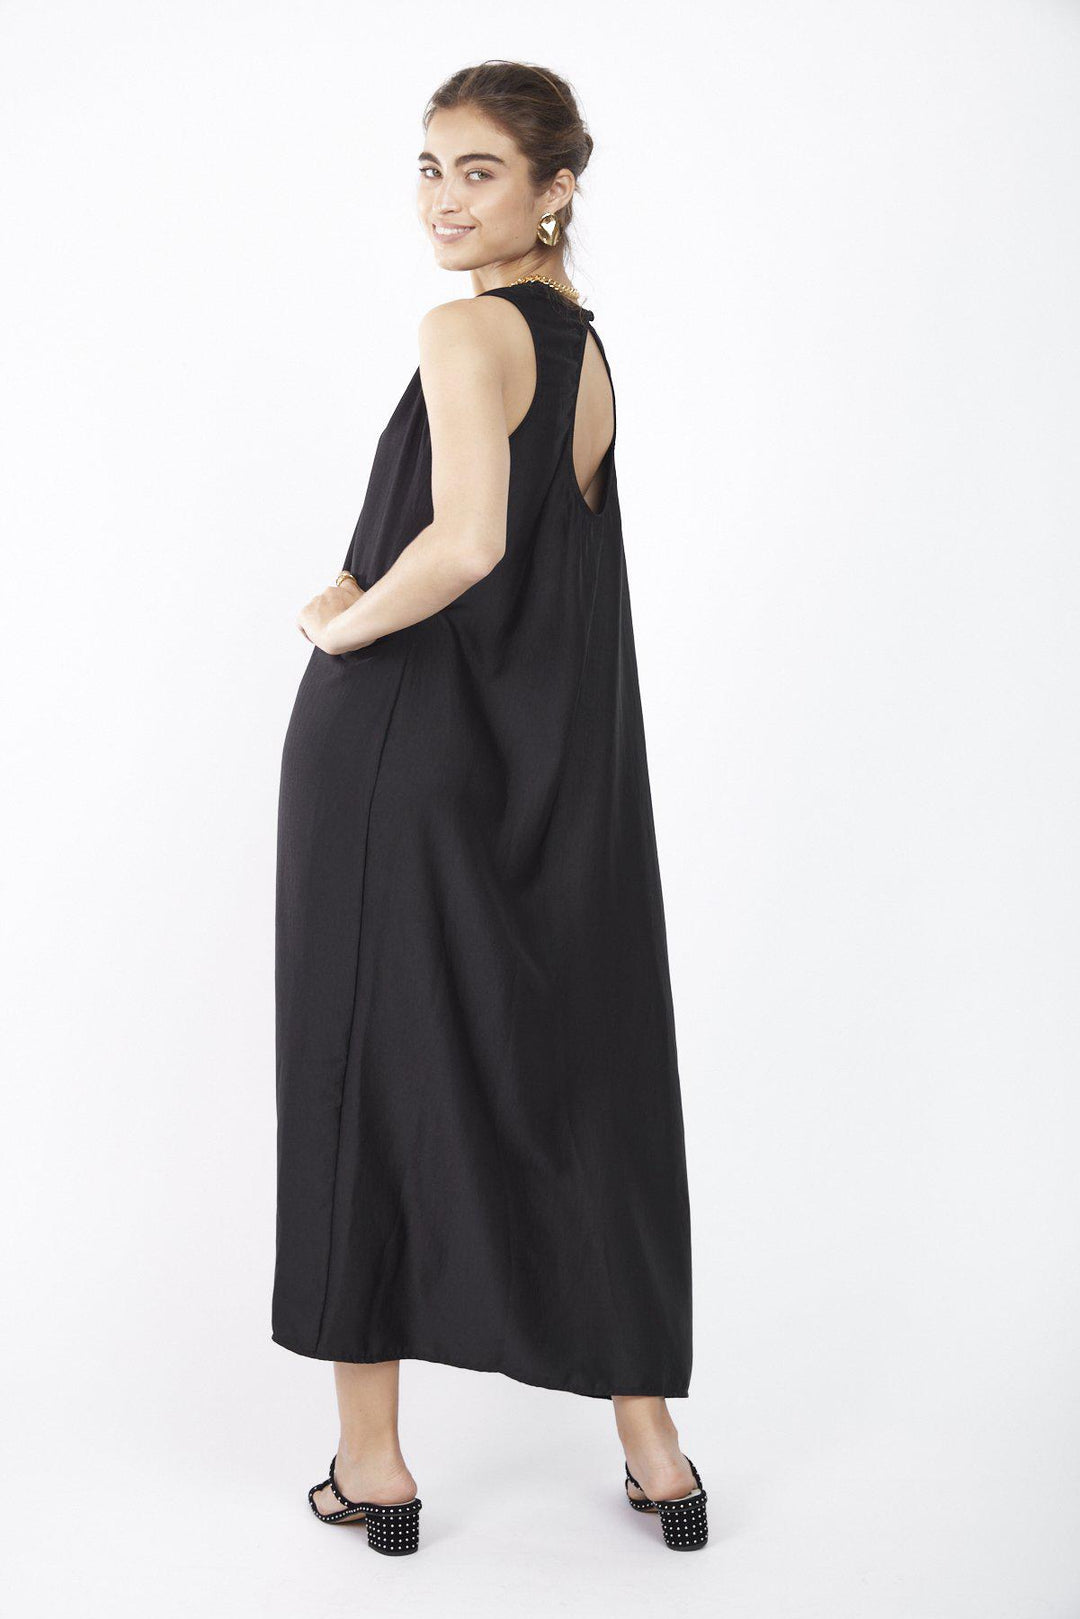 שמלת כרמן בצבע שחור - Dana Sidi